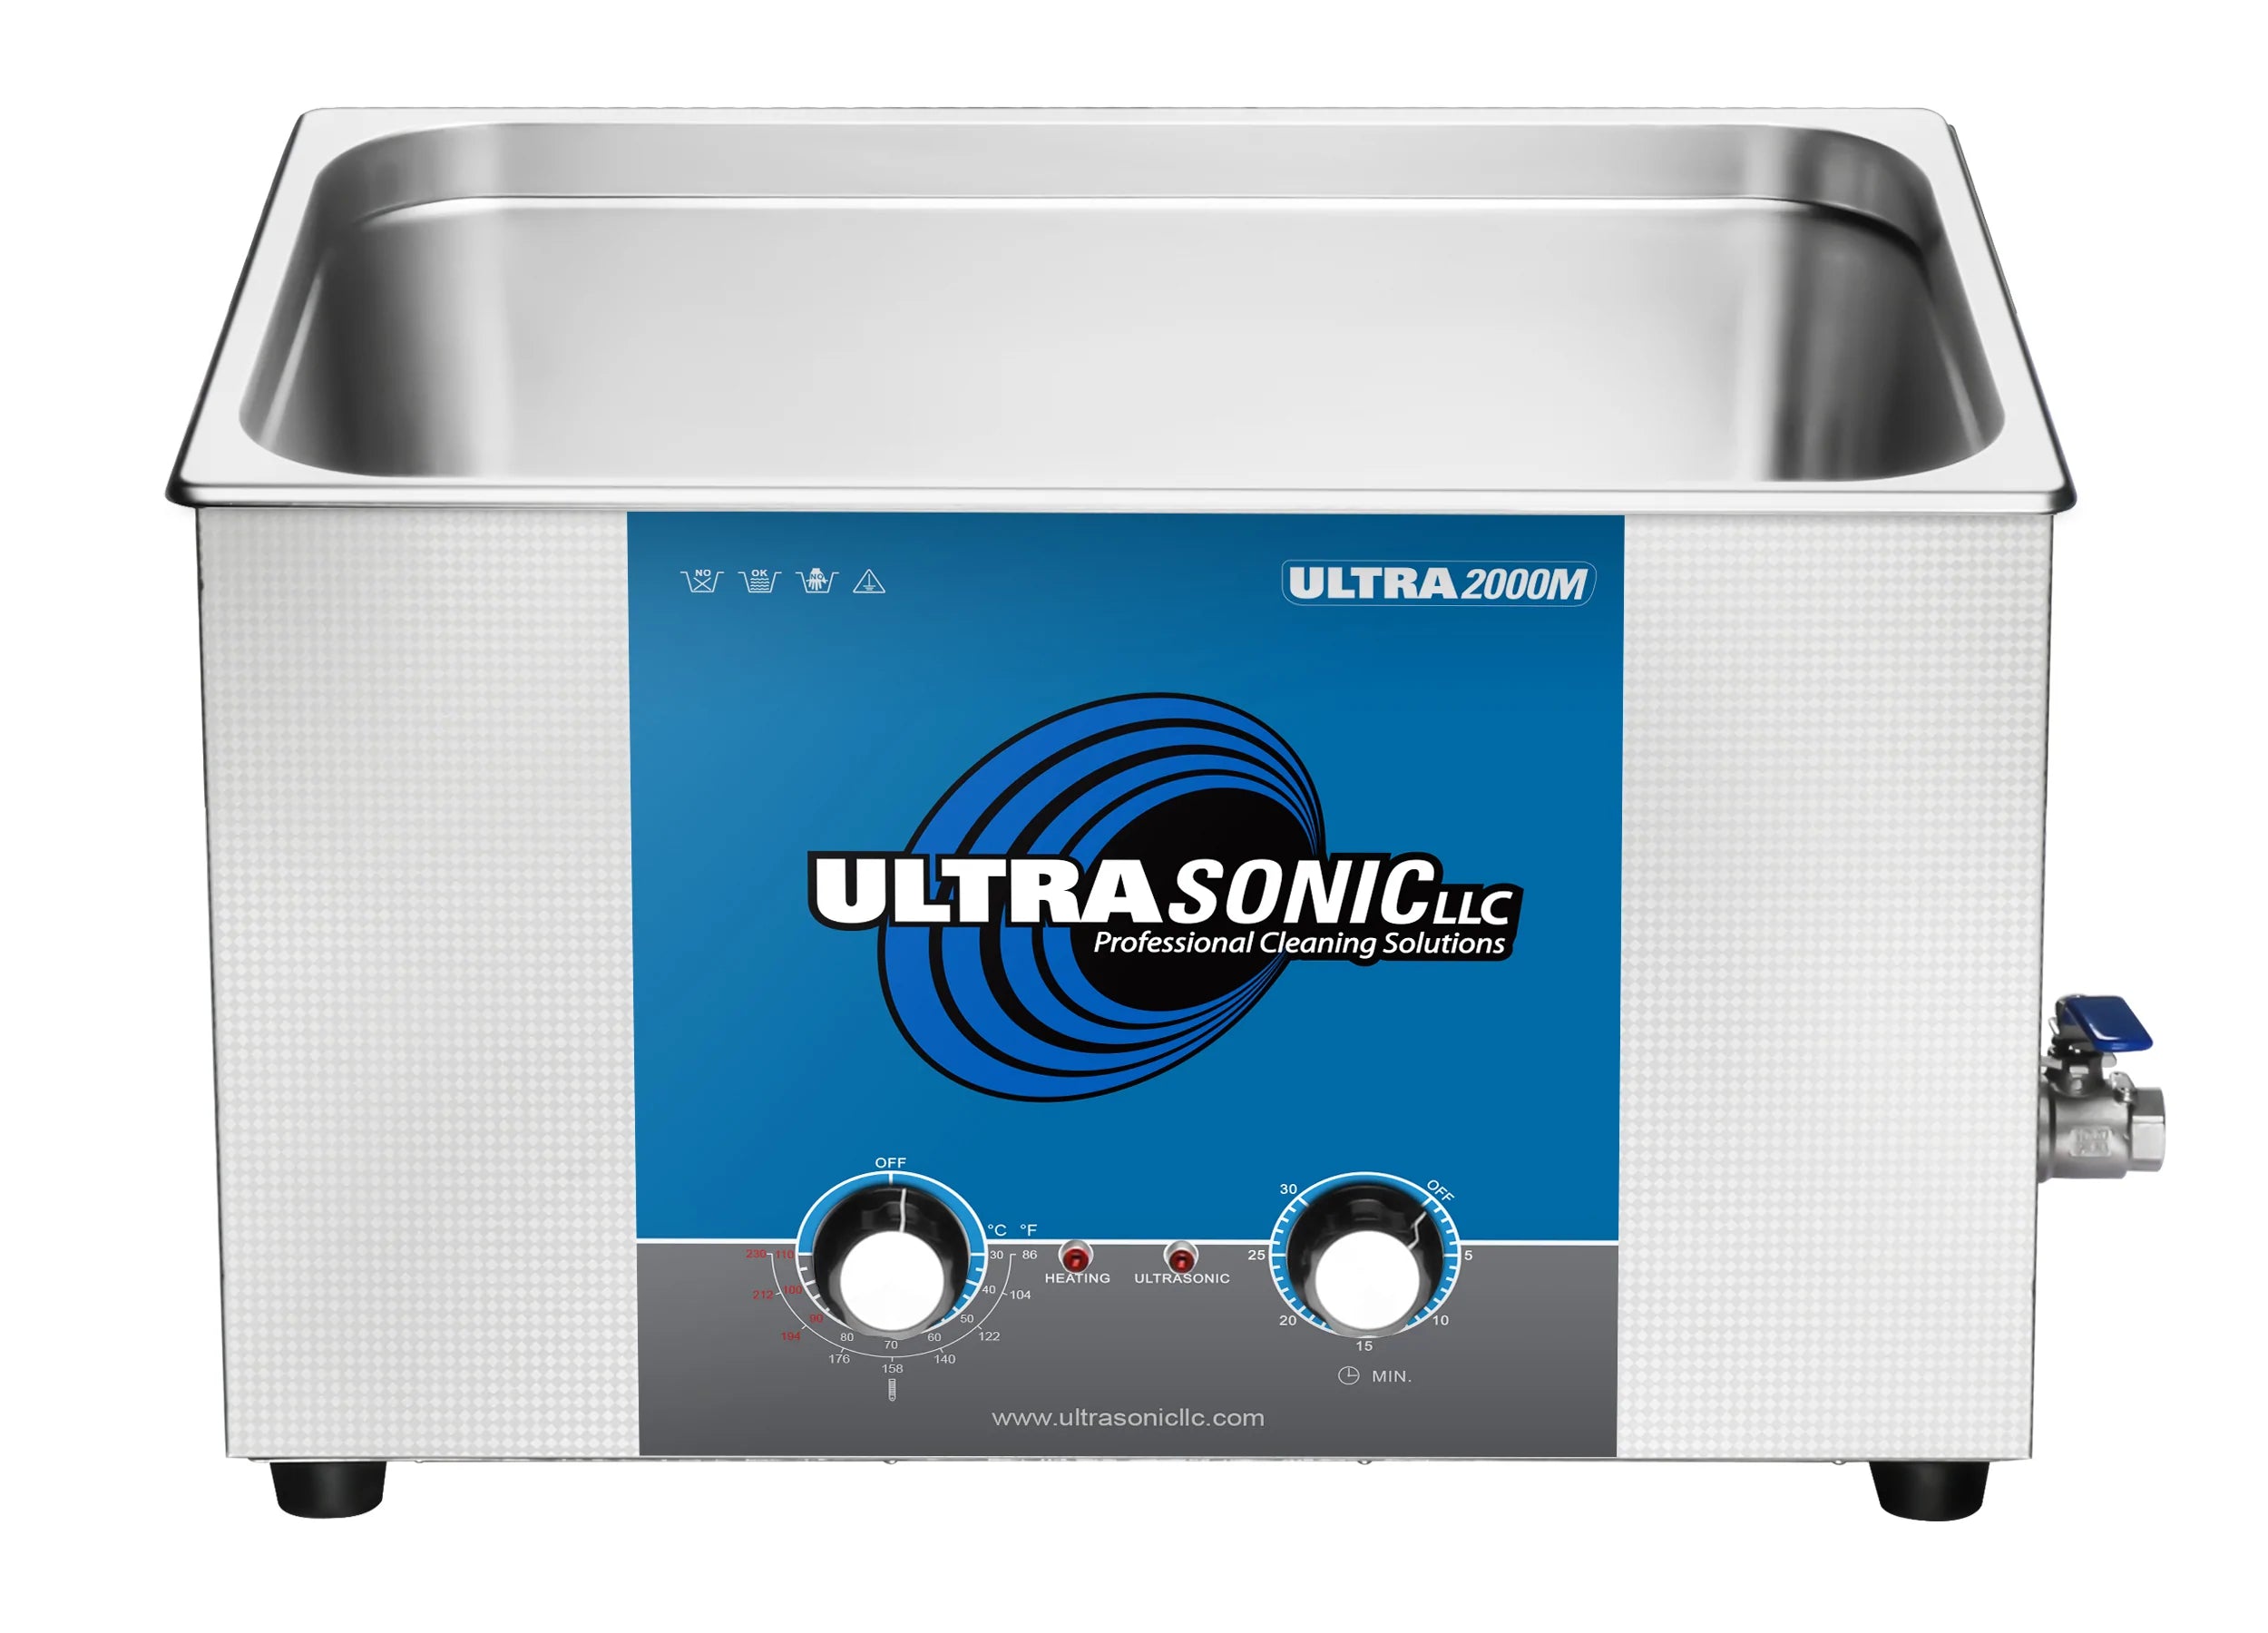 Ultrasonic Cleaning Equipment Leader » Pro Ultrasonics